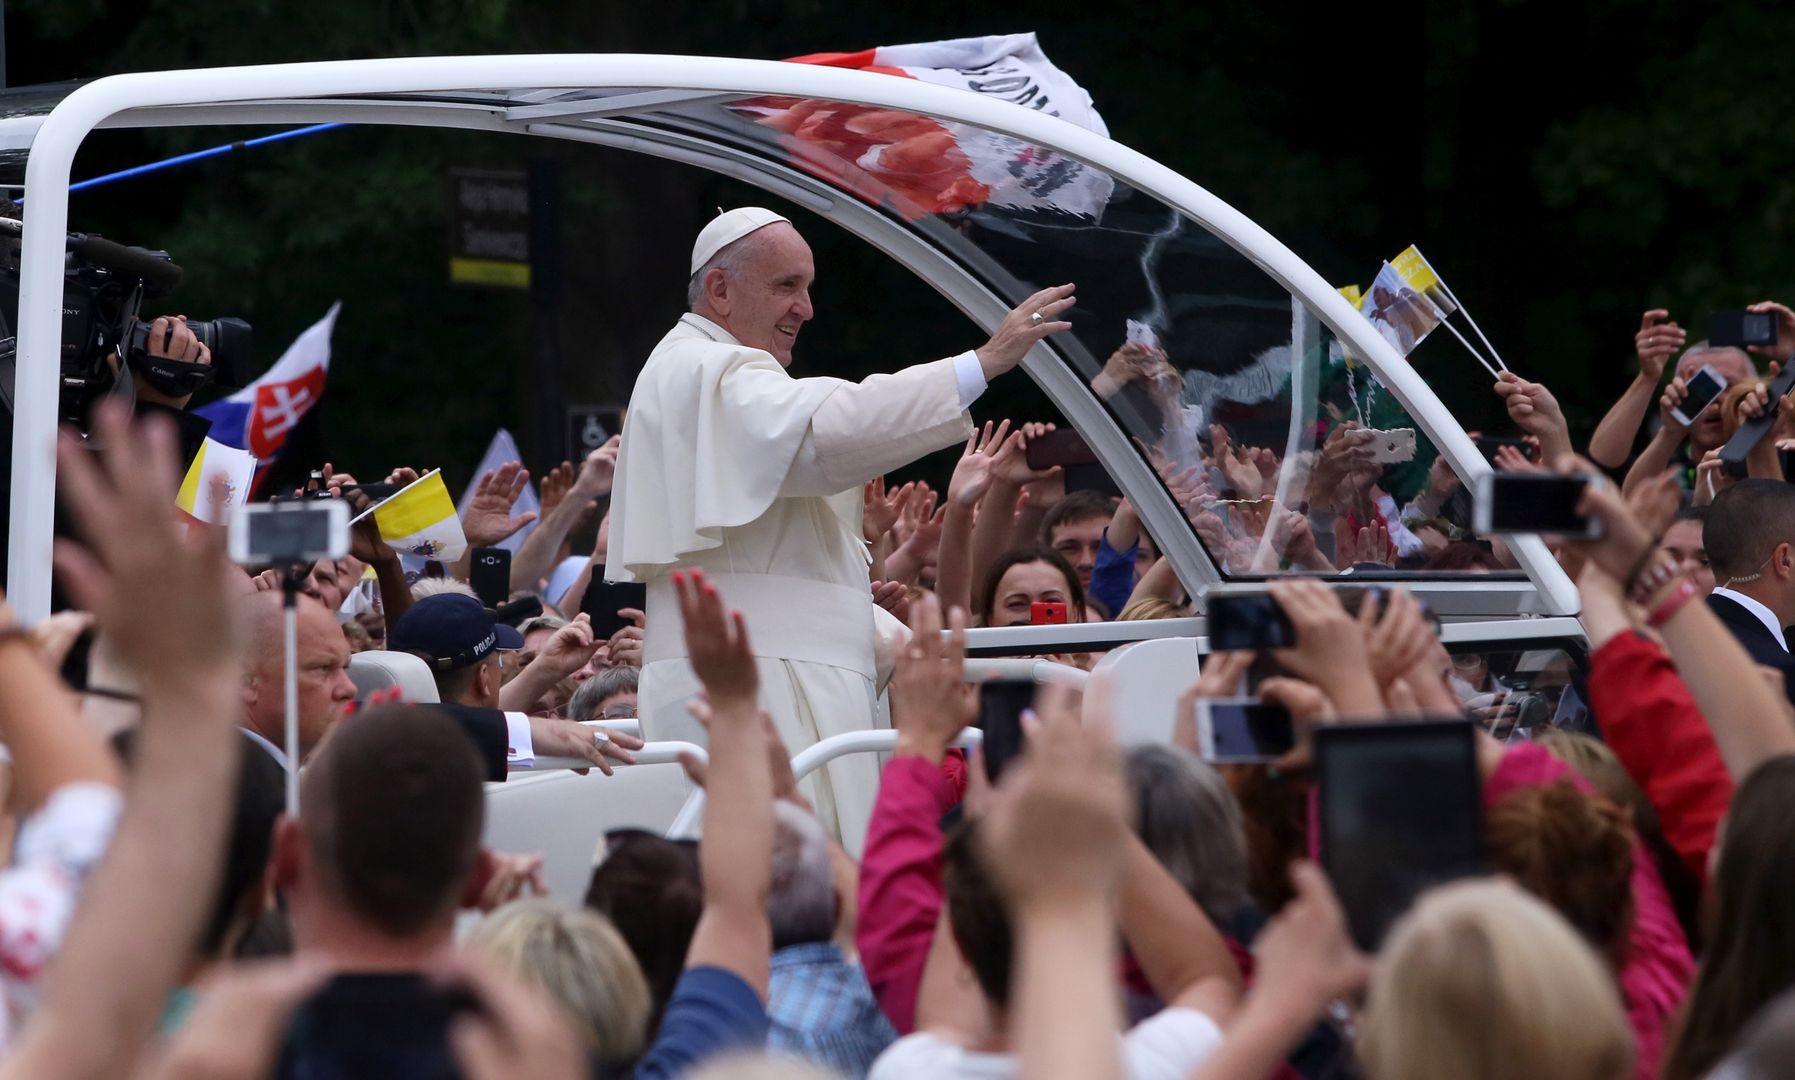 Zagraniczna prasa o papieżu: "zbyt liberalny" dla Polaków